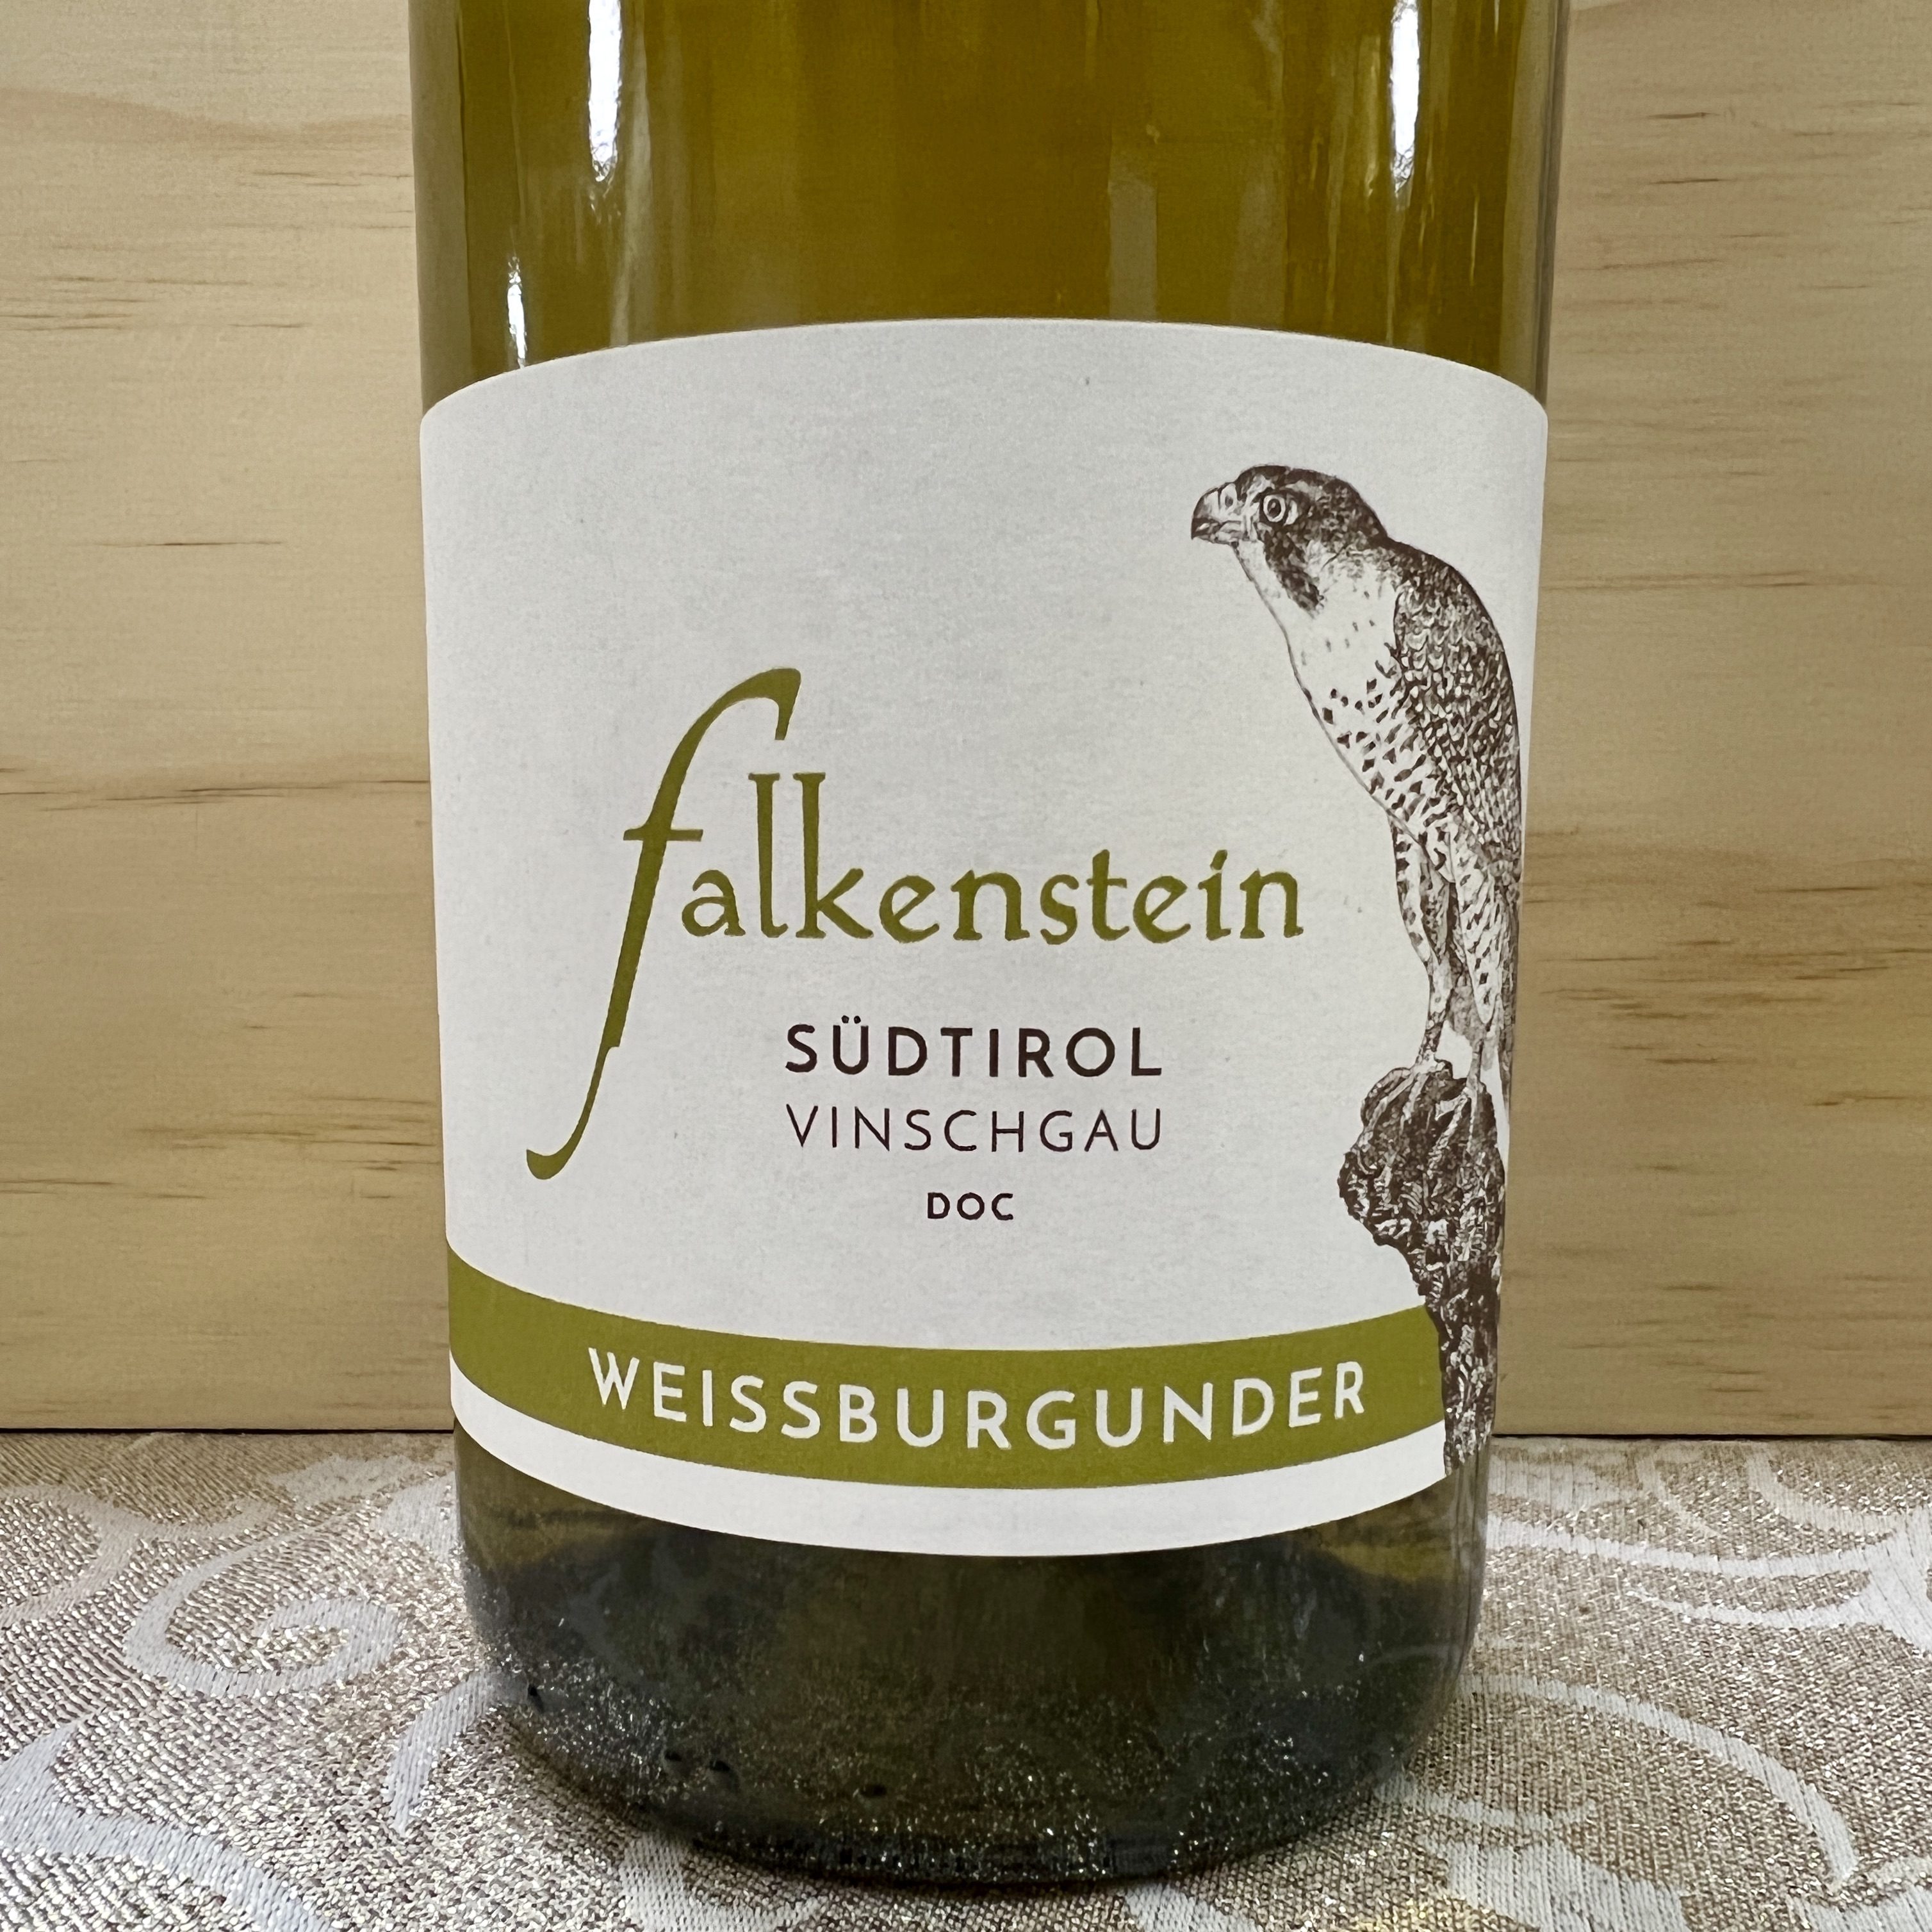 Falkenstein Weissburgunder ( Pinot Bianco) Sudtirol 2018